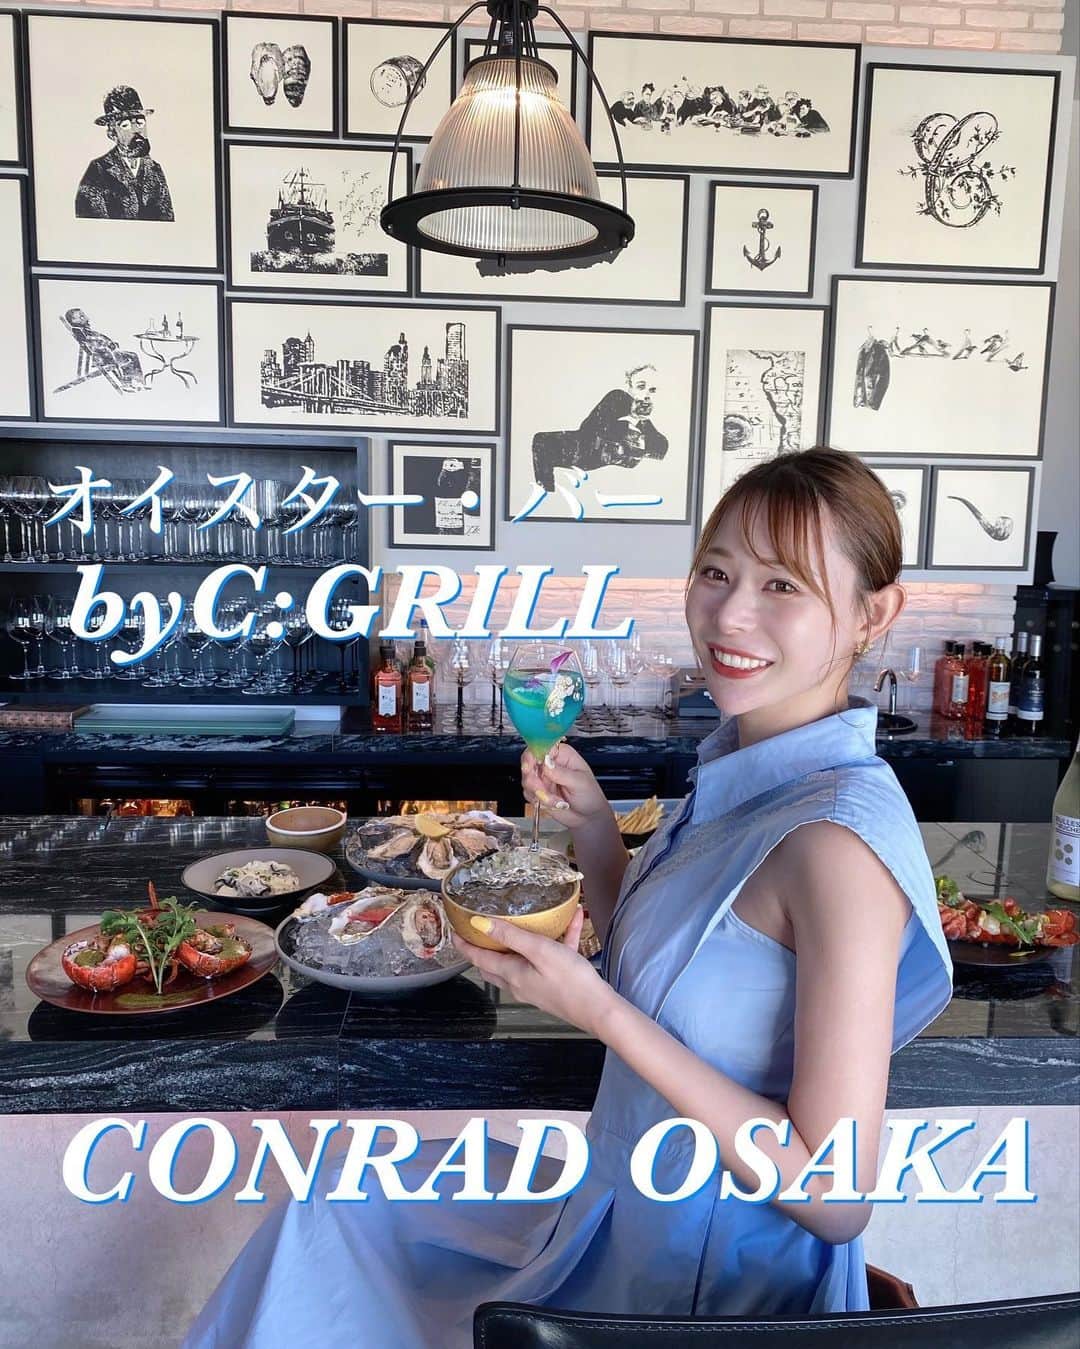 karen okajimaのインスタグラム：「CONRAD OSAKAで期間限定！！ オイスター・バー by C:GRILLが9/13から開催されるよ🦪  昨日、試食会に参加してきました☺️ 前回開催された期間限定のオイスターバーが お客様から大好評だったので第2弾の開催！！🦪  産地が異なる牡蠣の食べ比べができたり 様々なオイスターの料理を楽しめるのが魅力❤️  全てアラカルトで食べれるのも嬉しい！！ 私たちが今回試食したのは、 🦪3種のベイクドオイスターセット 🦪3種の生牡蠣のドレス添えセット 🦪シャンパーニュとキャビアのプレミアムオイスター 🦪アラカルトメニュープレート 🍸オリジナルカクテル  他にもロブスターを使った料理も頼めます🦞 どれも美味しかった〜🥰  9/13~12/17、1/17~4/21の期間中のみの営業です🙆‍♀️💓 牡蠣好きの方はぜひ行ってみてね✌️  #コンラッド大阪 #コンラッド #シーグリル #オイスター #オイスターバー #牡蠣 #大阪ホテル #conradosaka #oyster #oysterbar #oysterbarcgrill #CGRILL #PR」